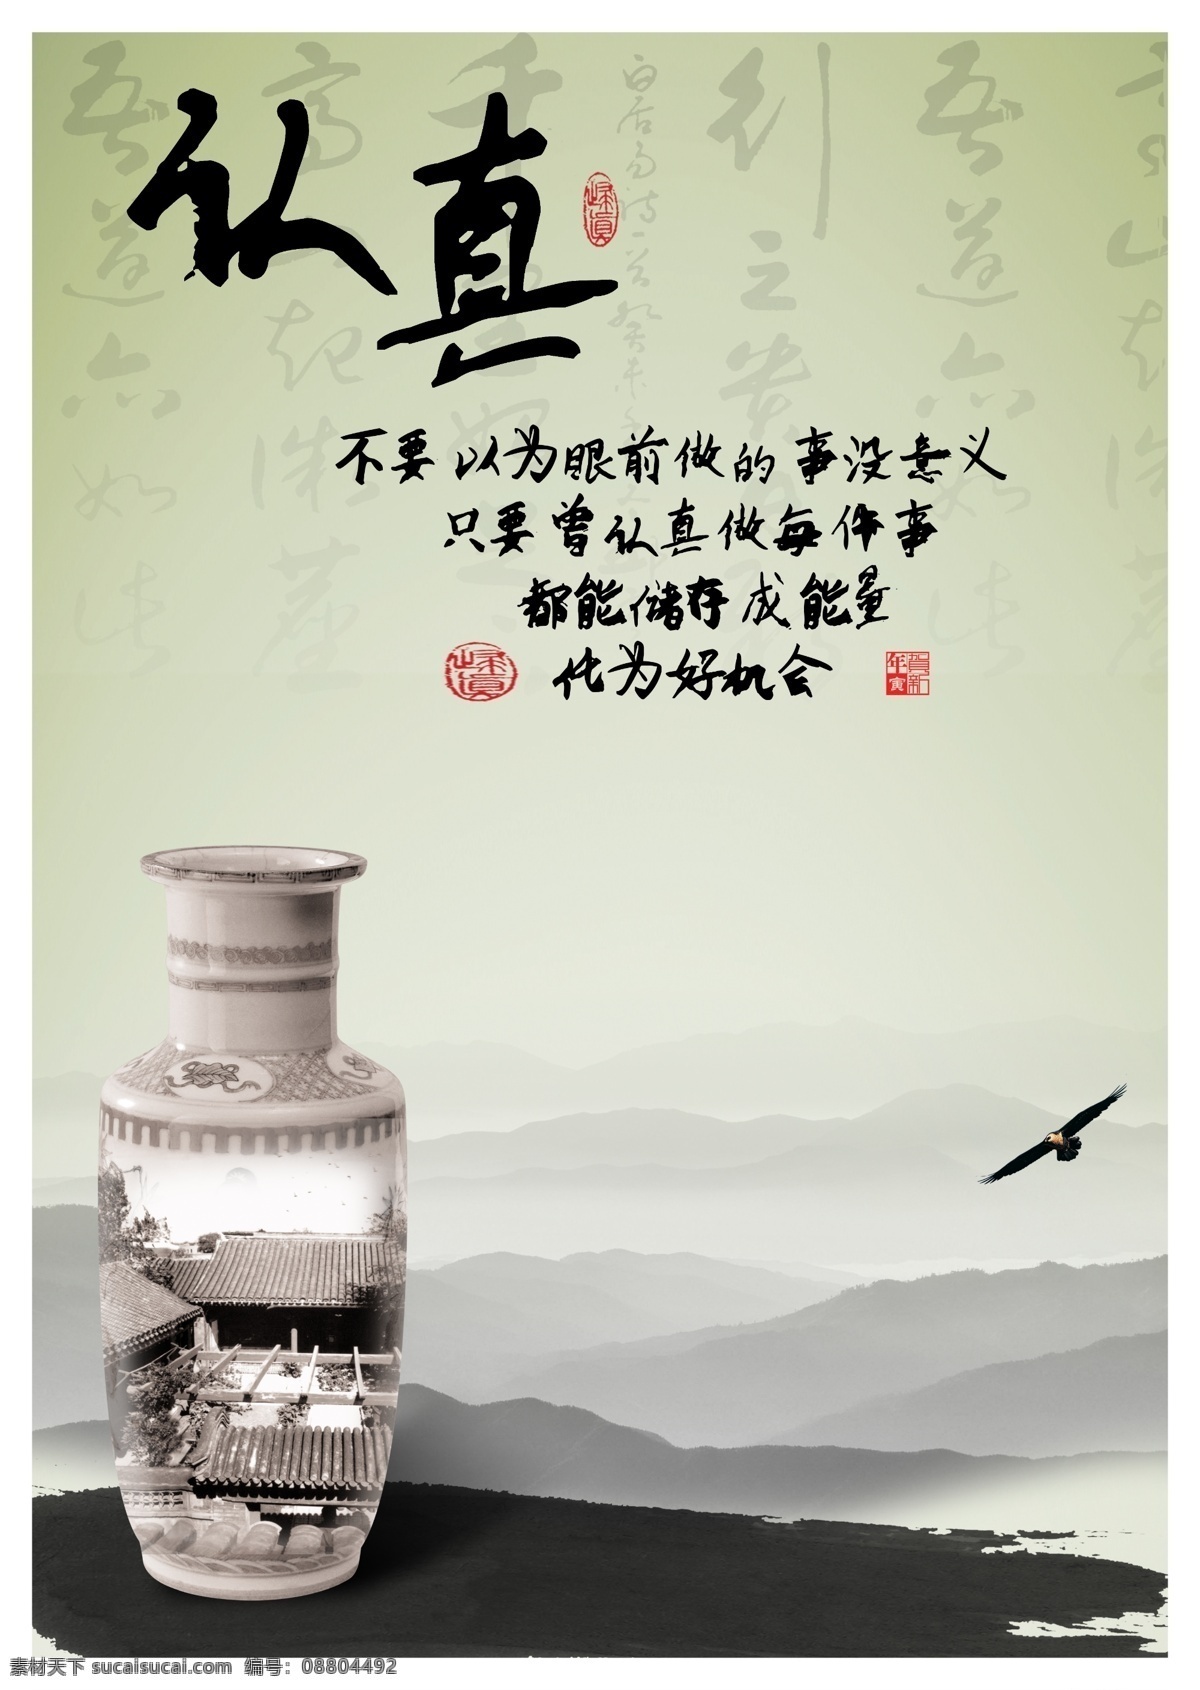 中国 风 校园文化 认真 展板 书法 花瓶 鹰 远山 办公室展板 展板模板 广告设计模板 源文件